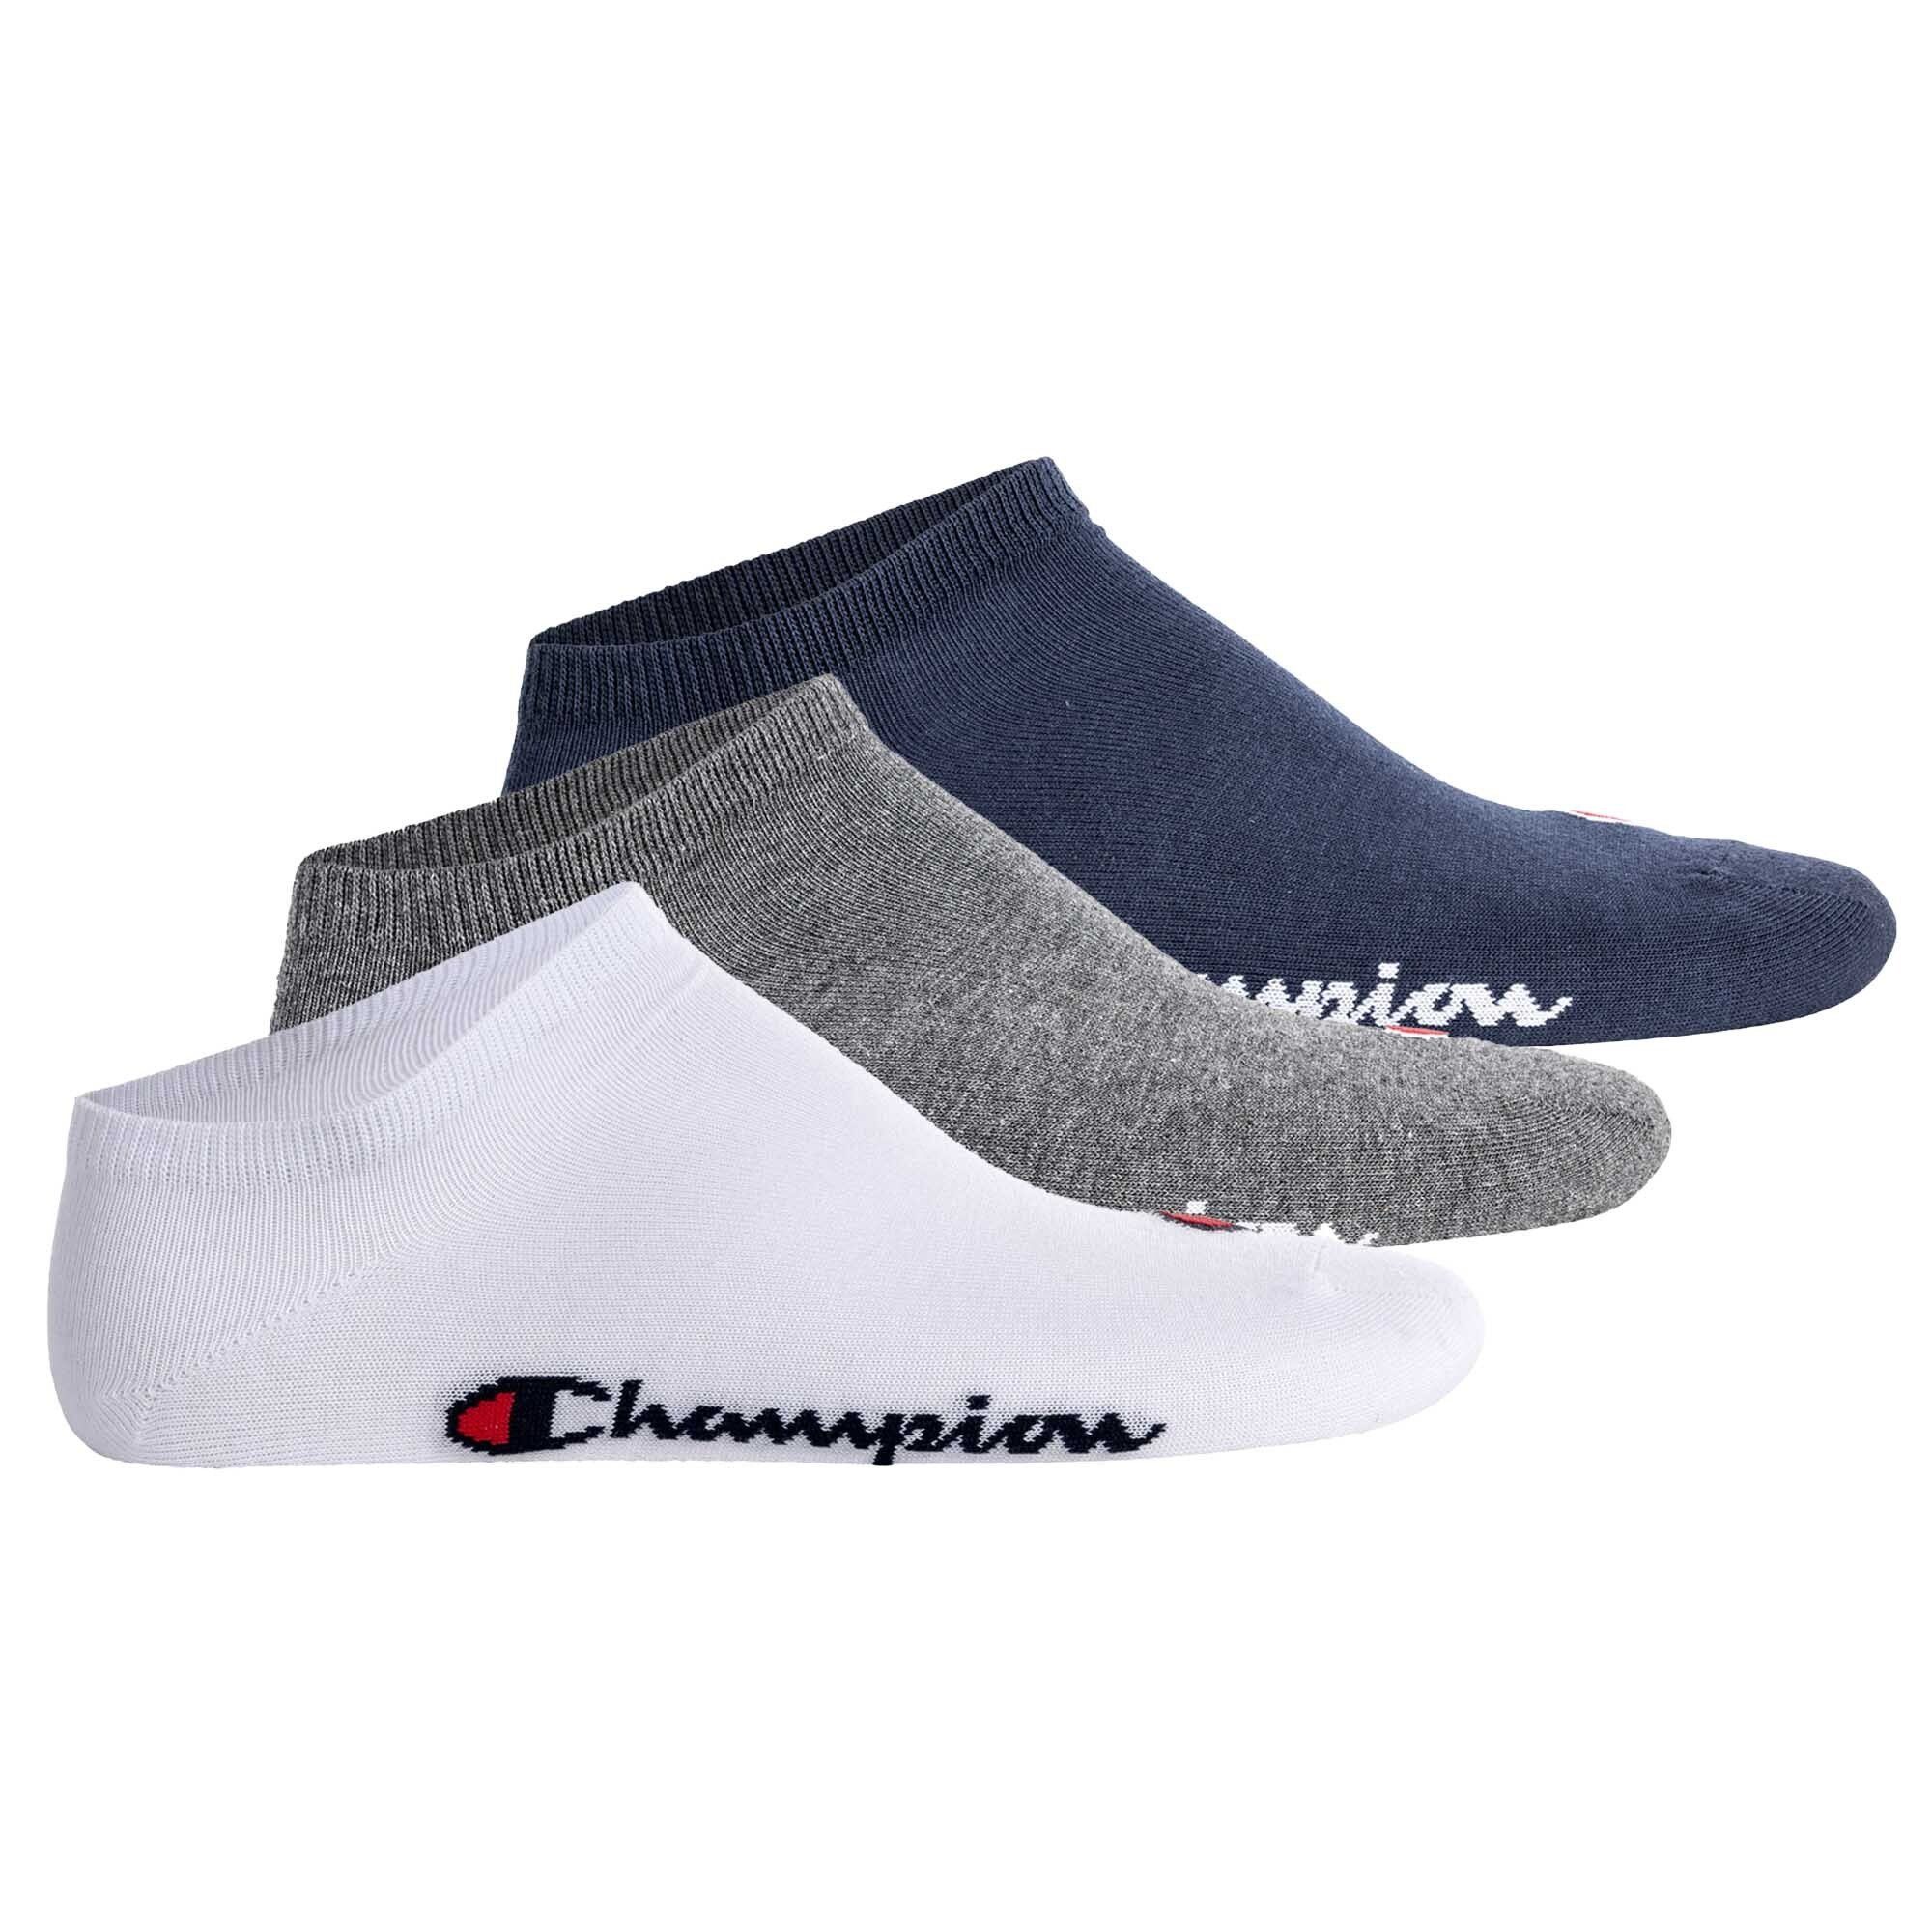 Unisex Sneaker Paar Blau/Weiß/Grau Sportsocken 3 Champion Socken, Basic - Socken